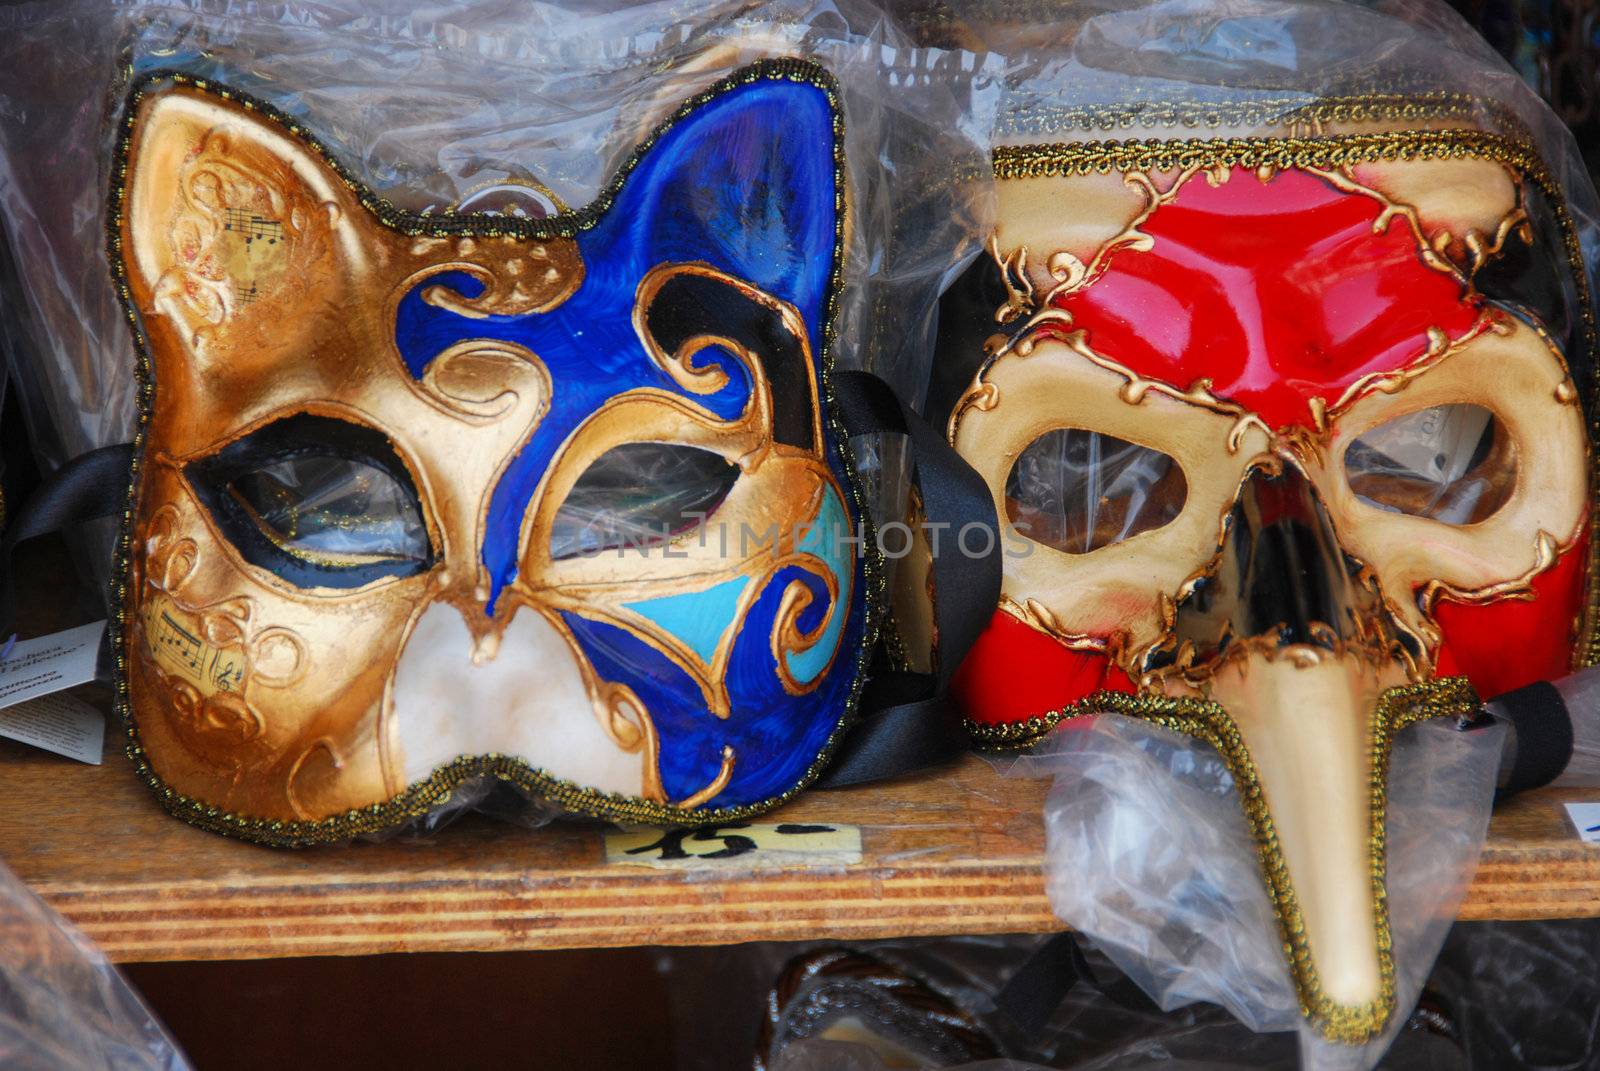 Venice Masks, 2007 by jovannig